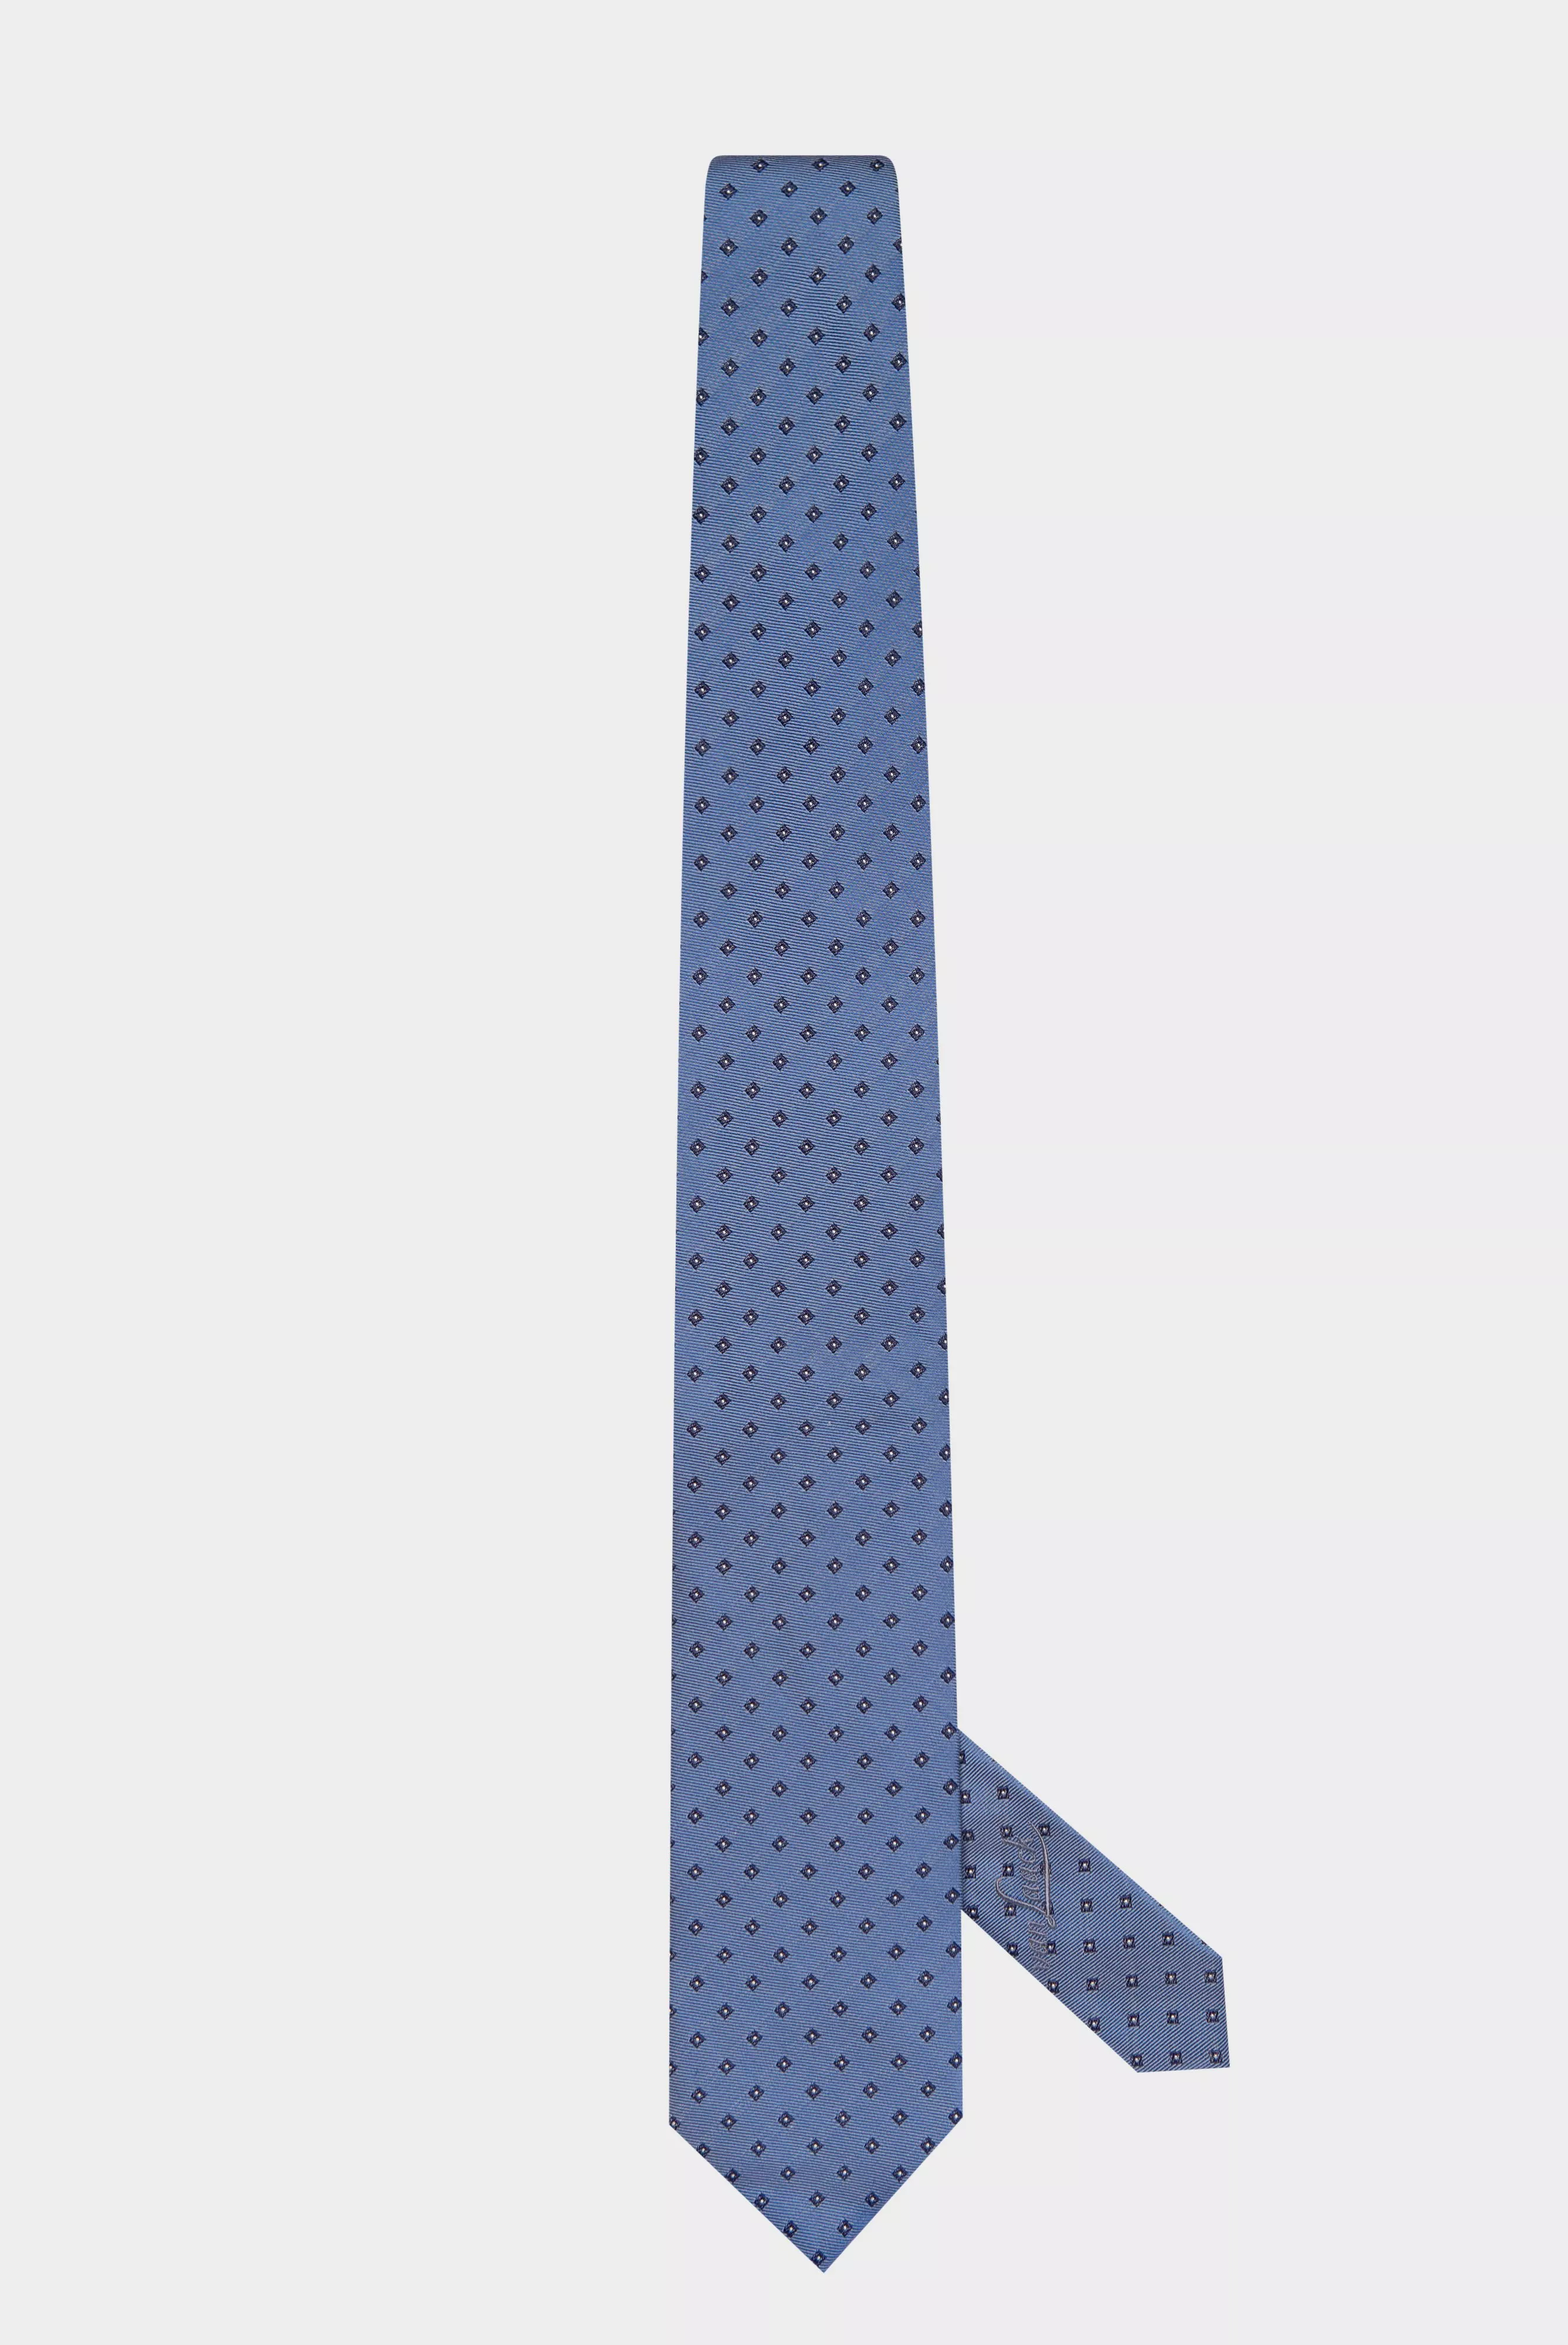 галстук LUIS EL голубой LUIS-EL_K04180_740 ,photo 1